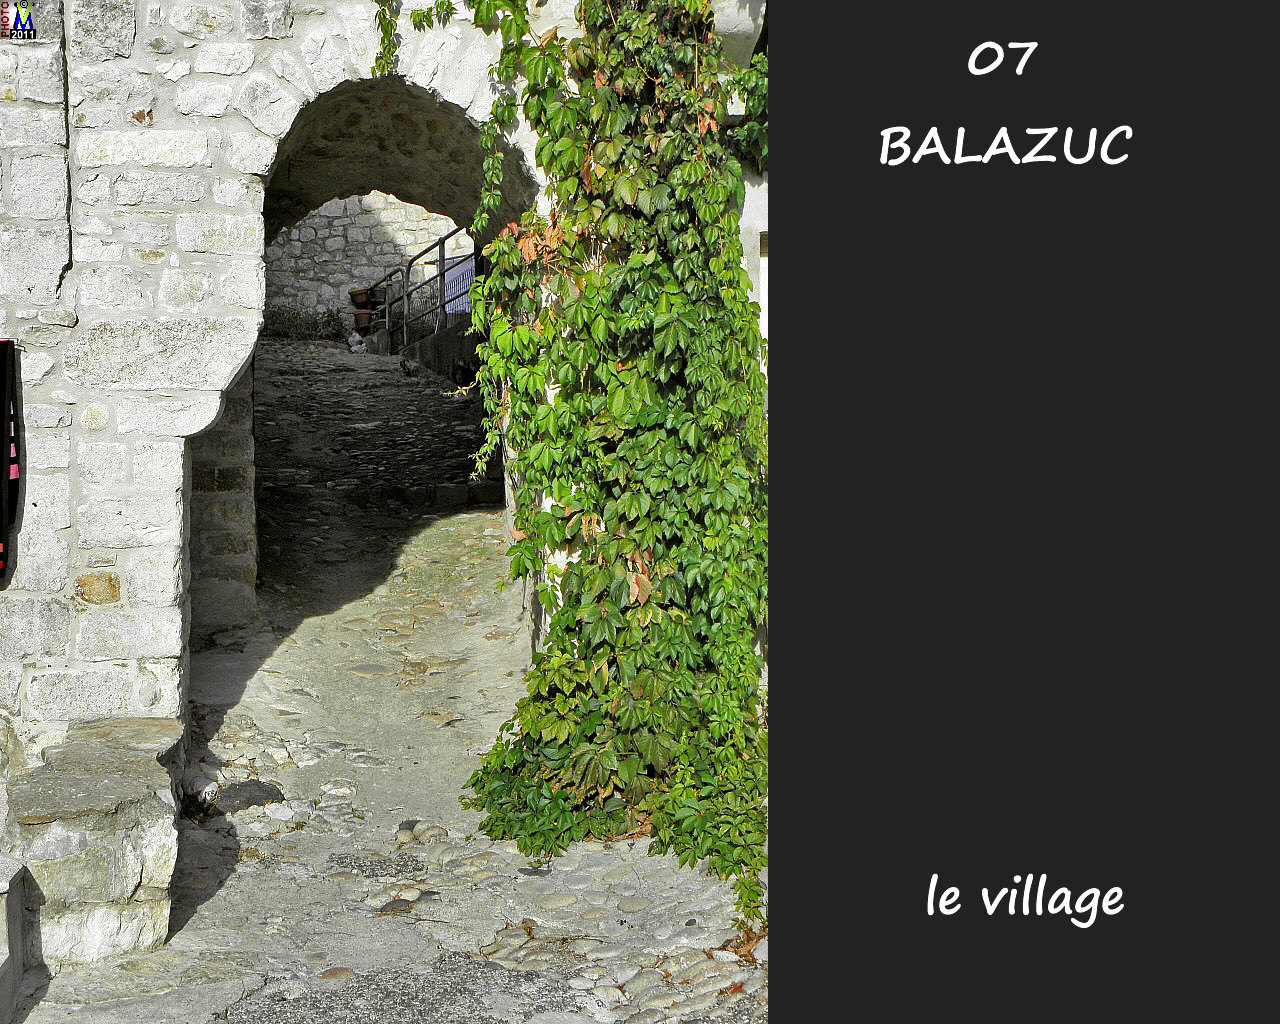 07BALAZUC_village_154.jpg